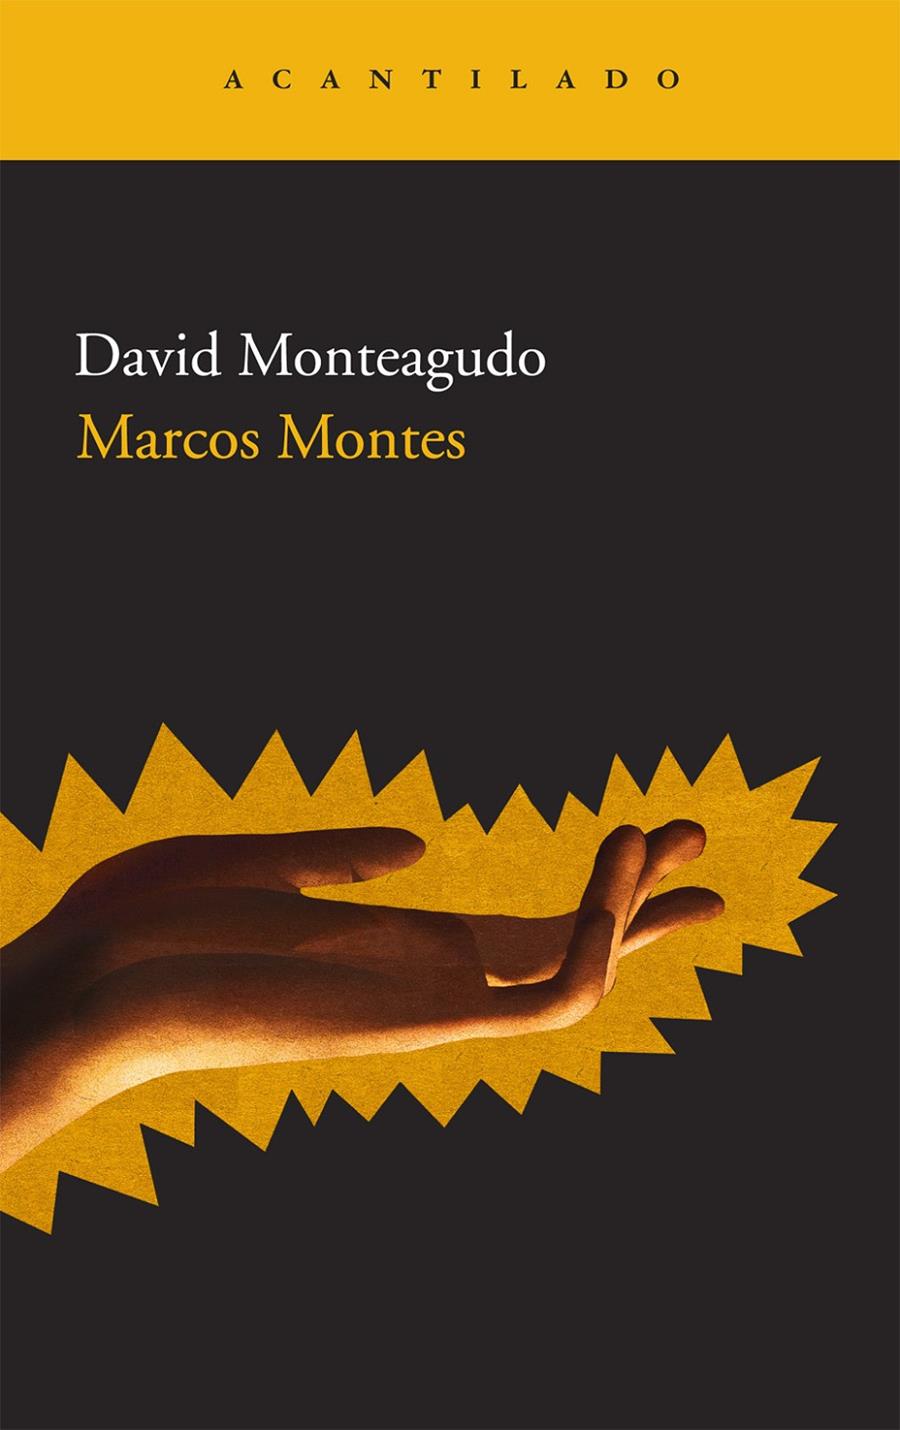 Marcos Montes | Monteagudo, David | Cooperativa autogestionària